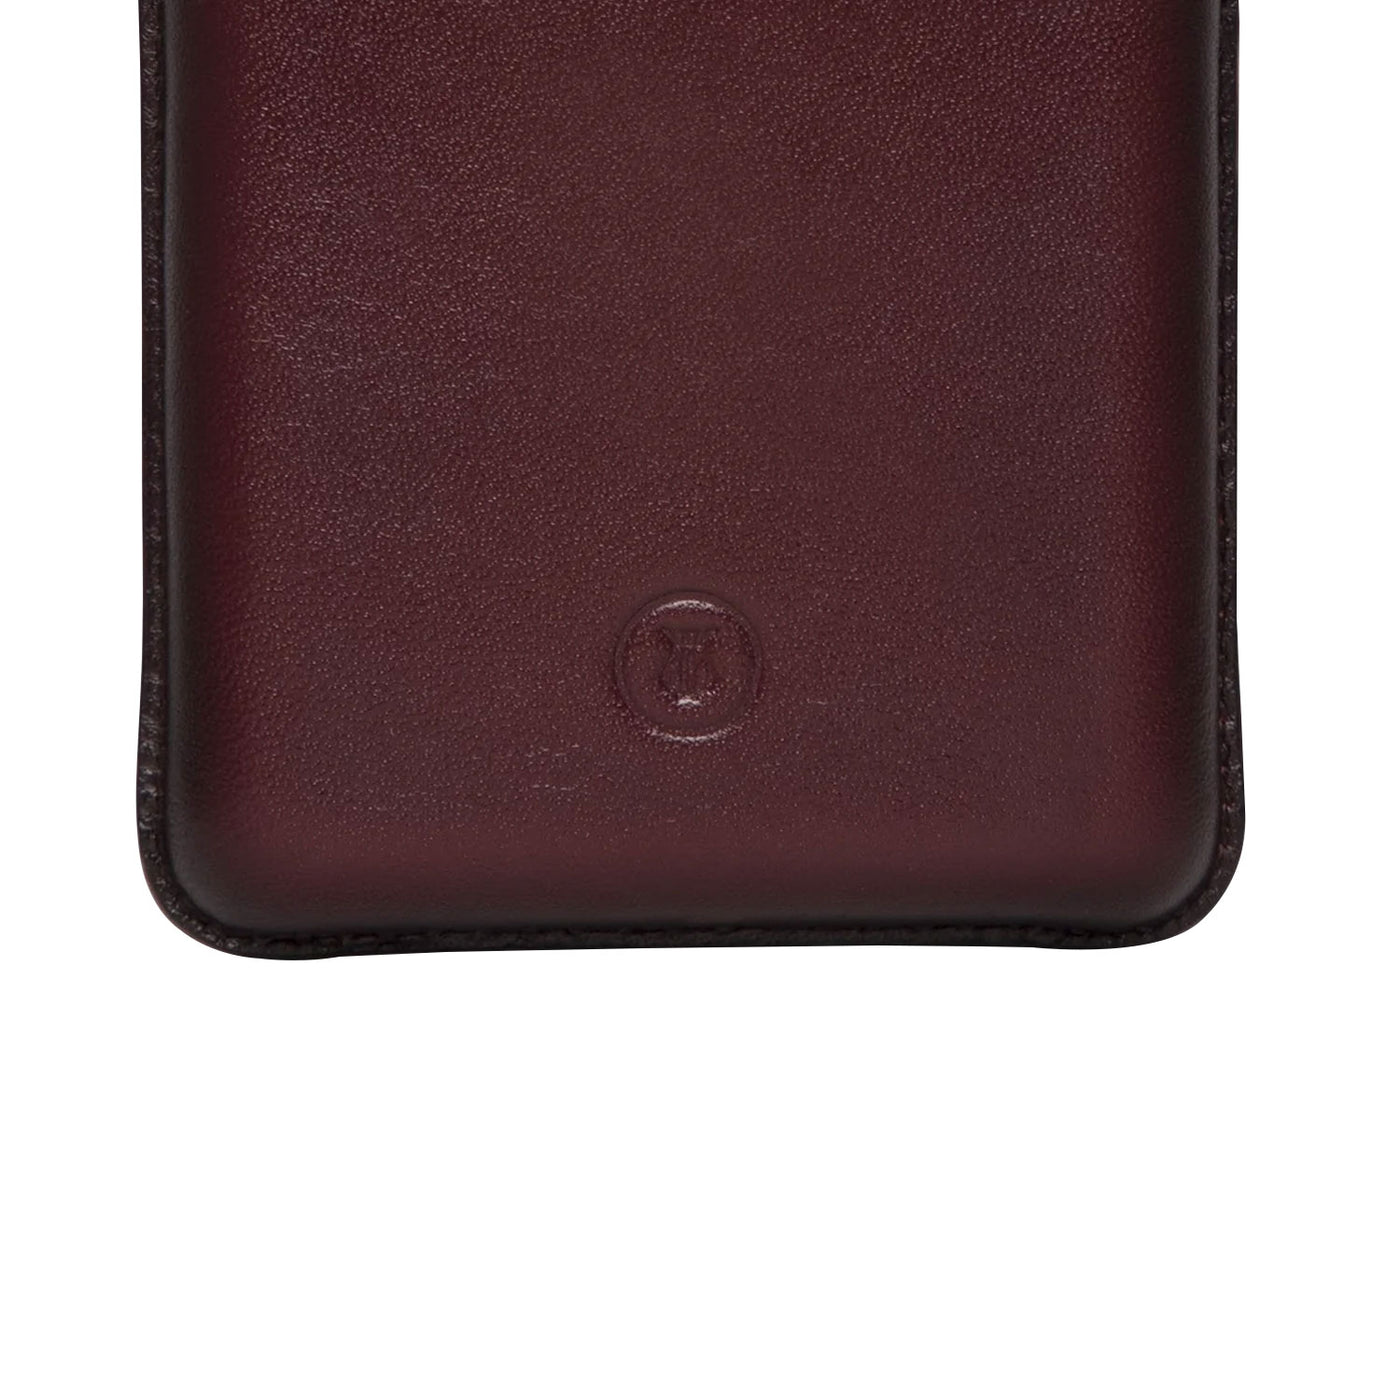 Lapis Bard Ducorium Moulded Card Case - Bordeaux